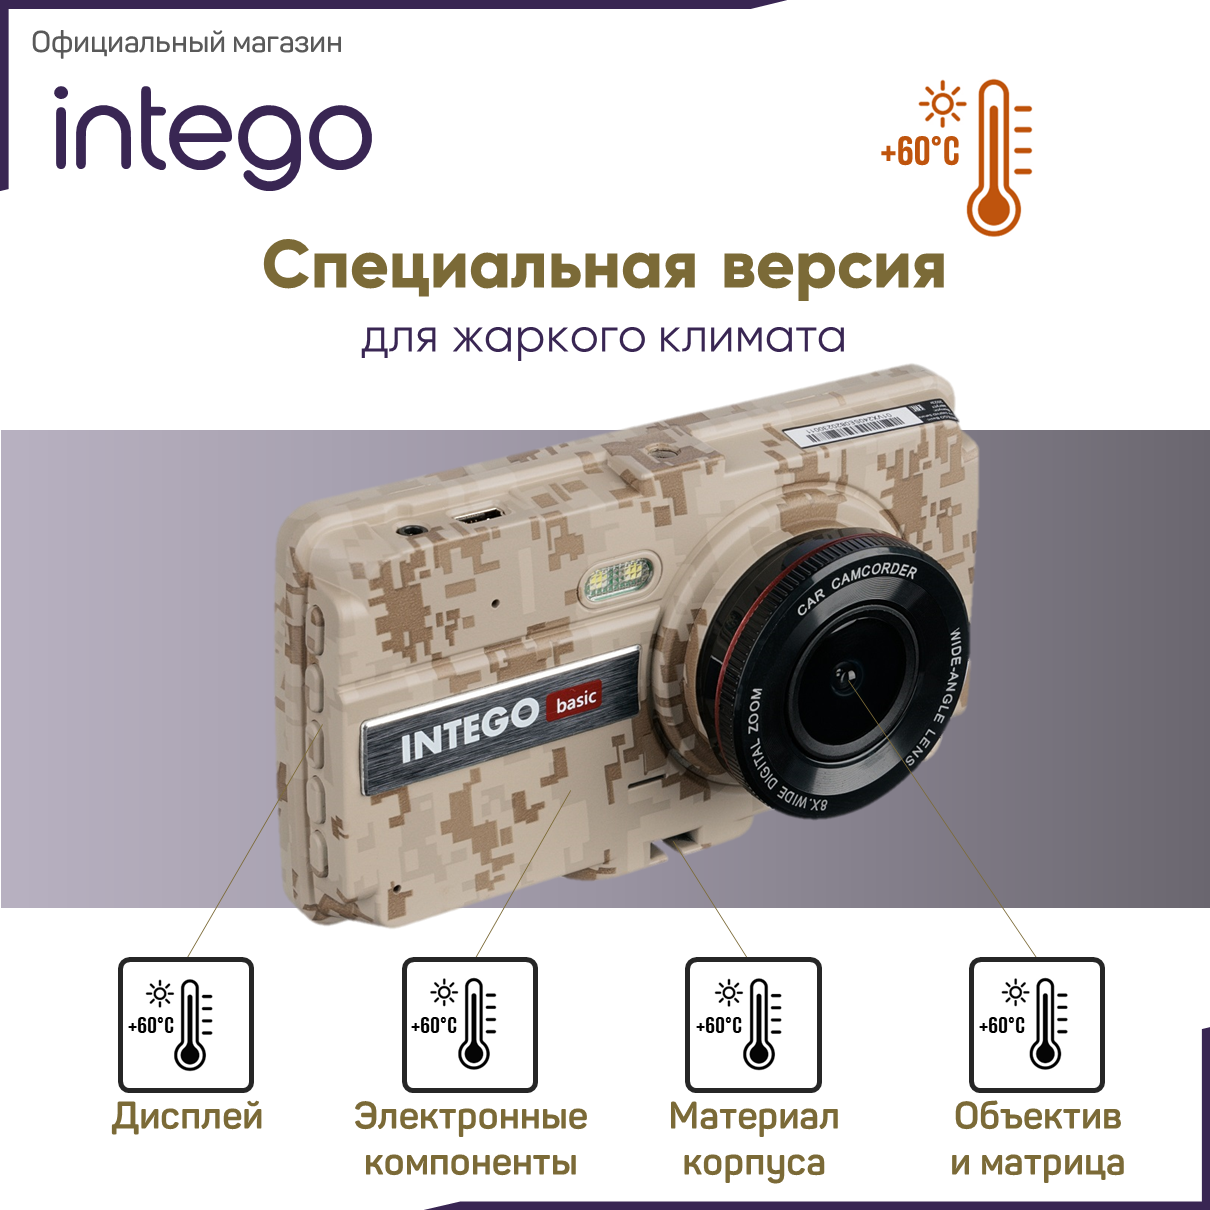 Видеорегистратор INTEGO Basic VX-240FHD Sahara Edition для жаркого климата с салонной камерой и картой памяти 32 GB в комплекте